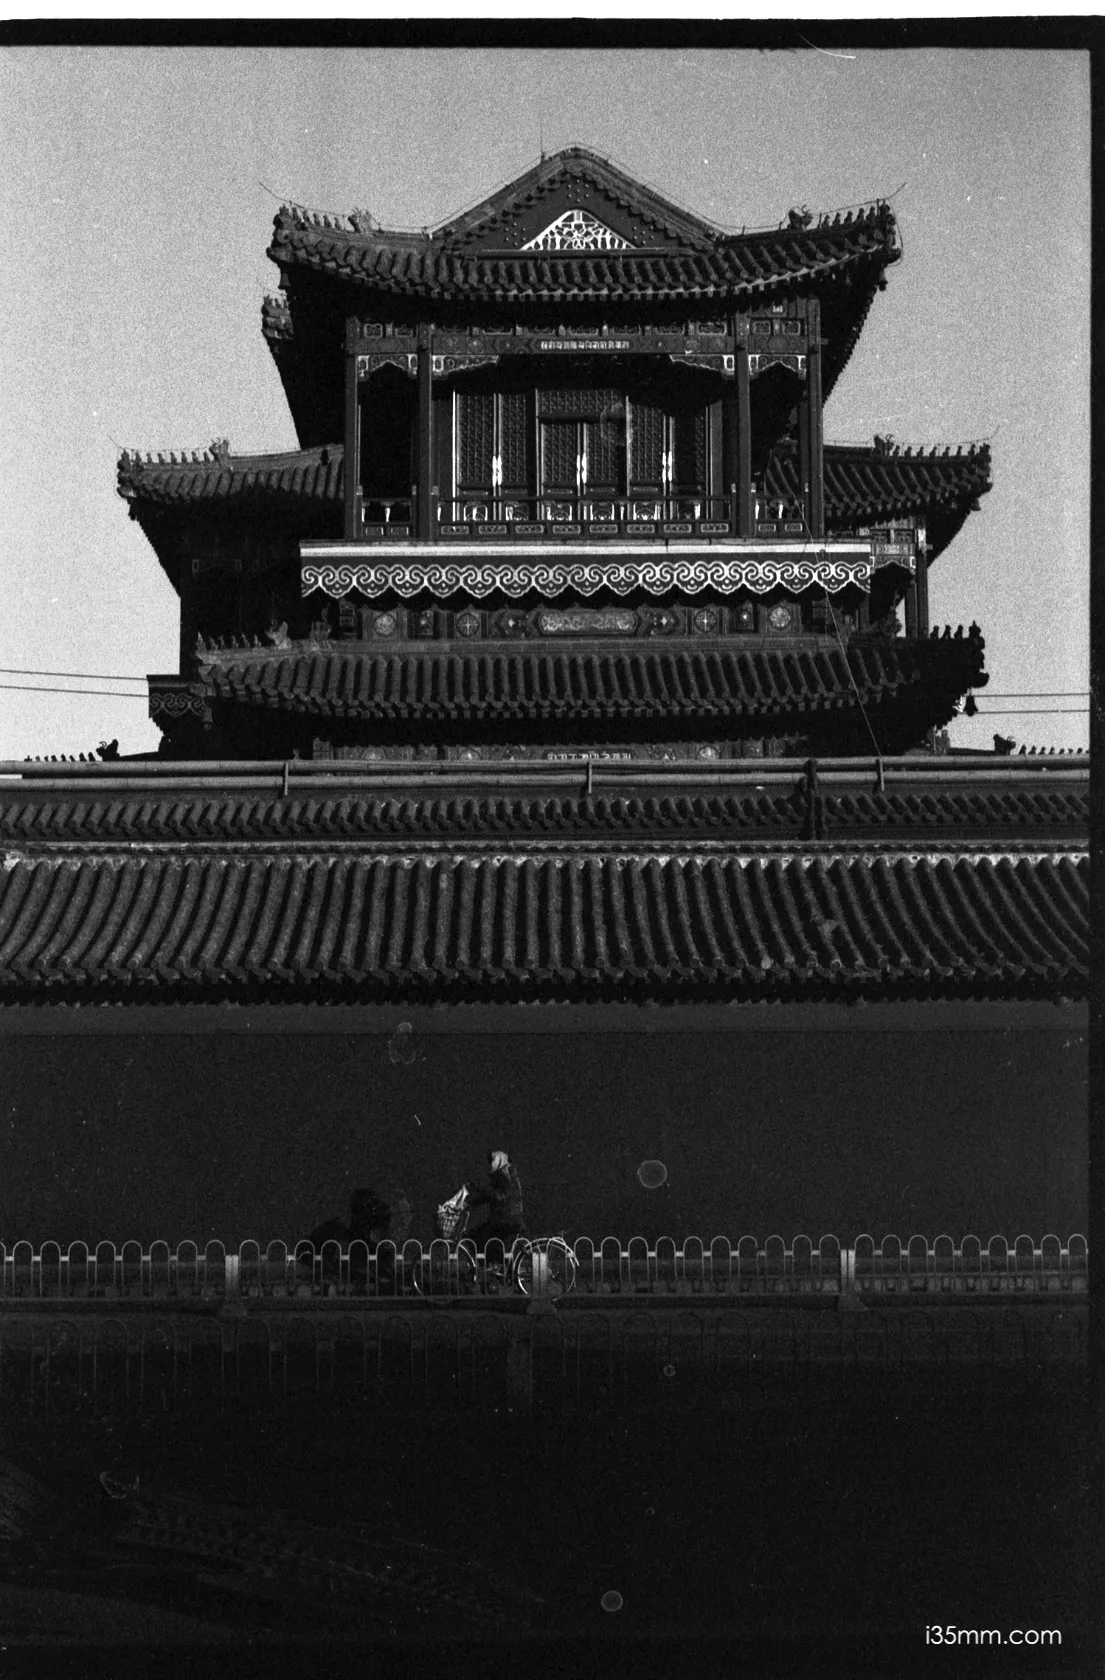 Leica 5cm f/1.5 Summarit